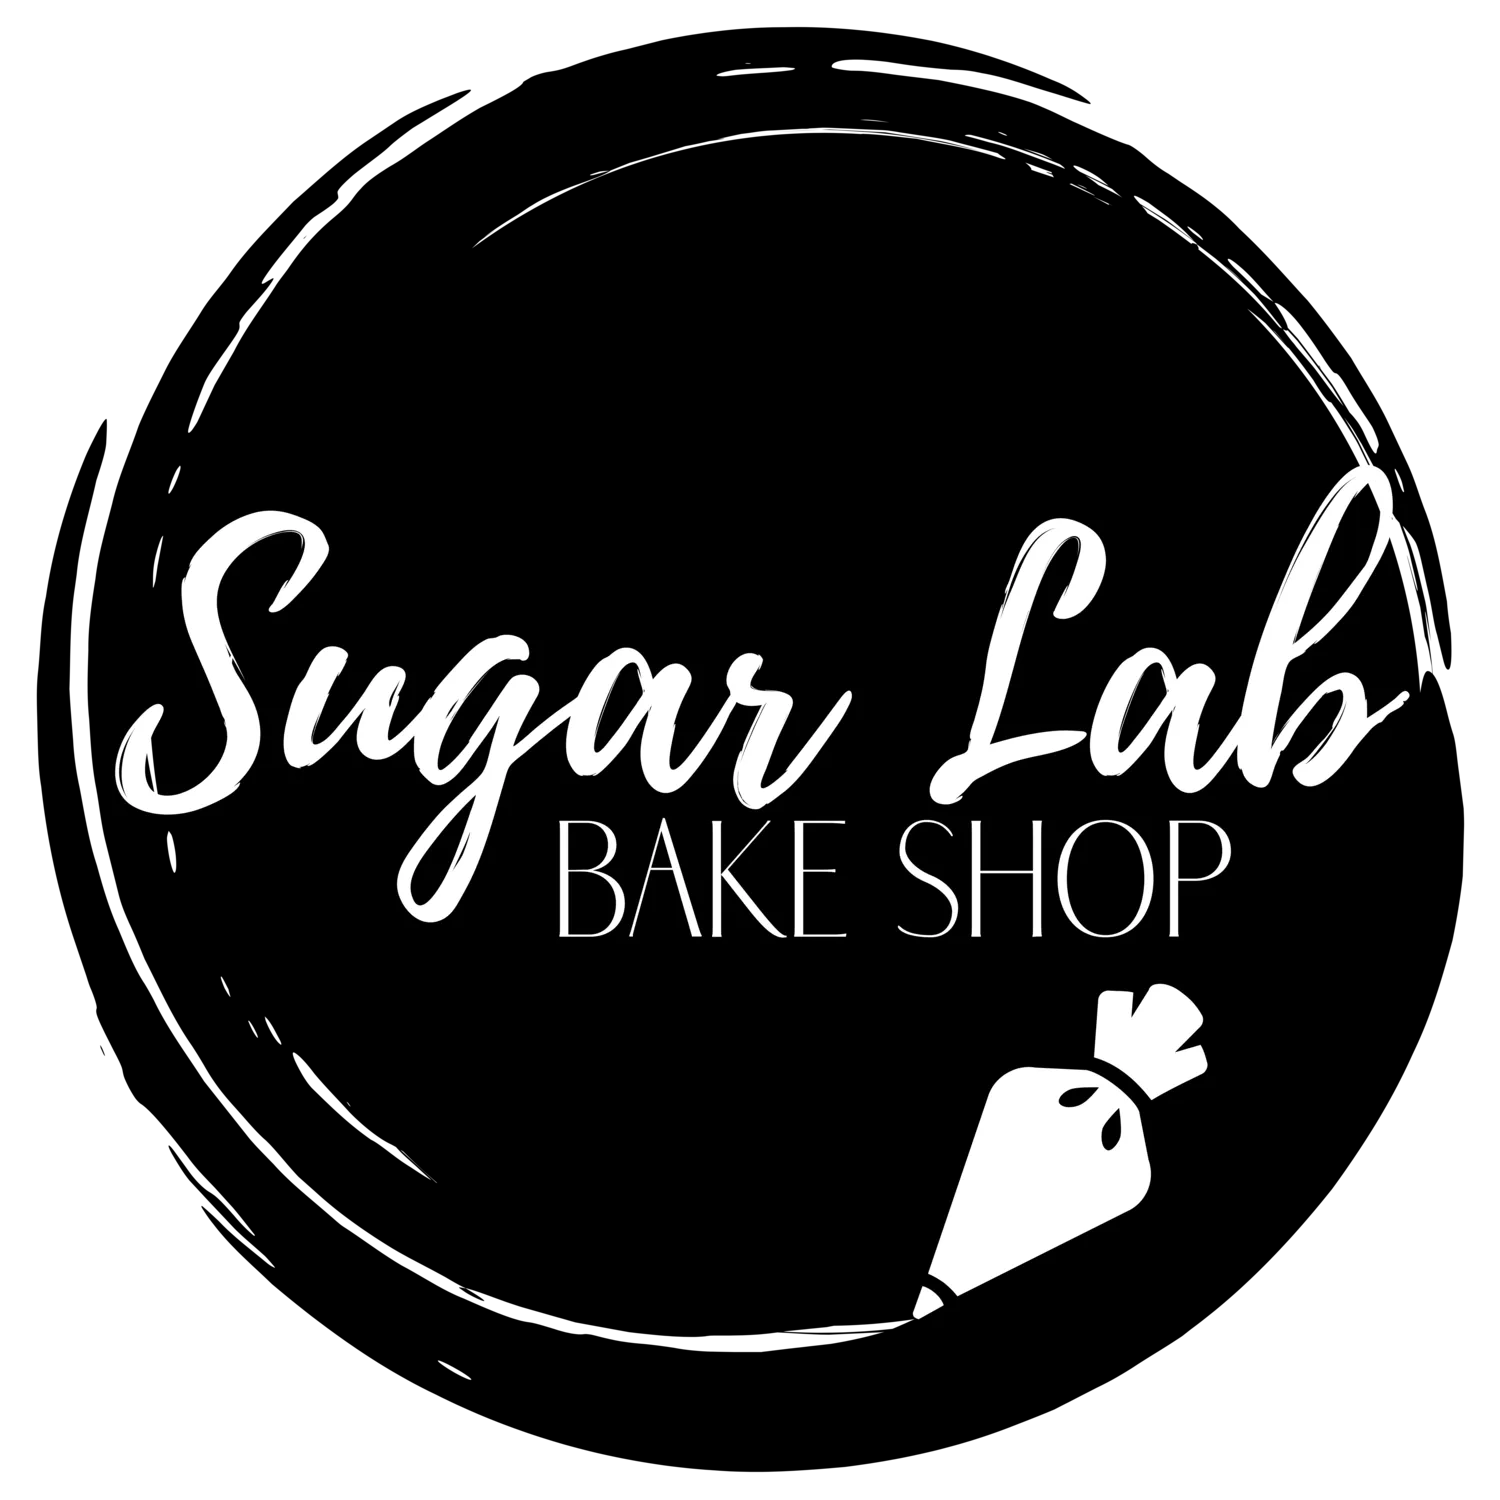 Sugar Lab Bake Shop Kody promocyjne 